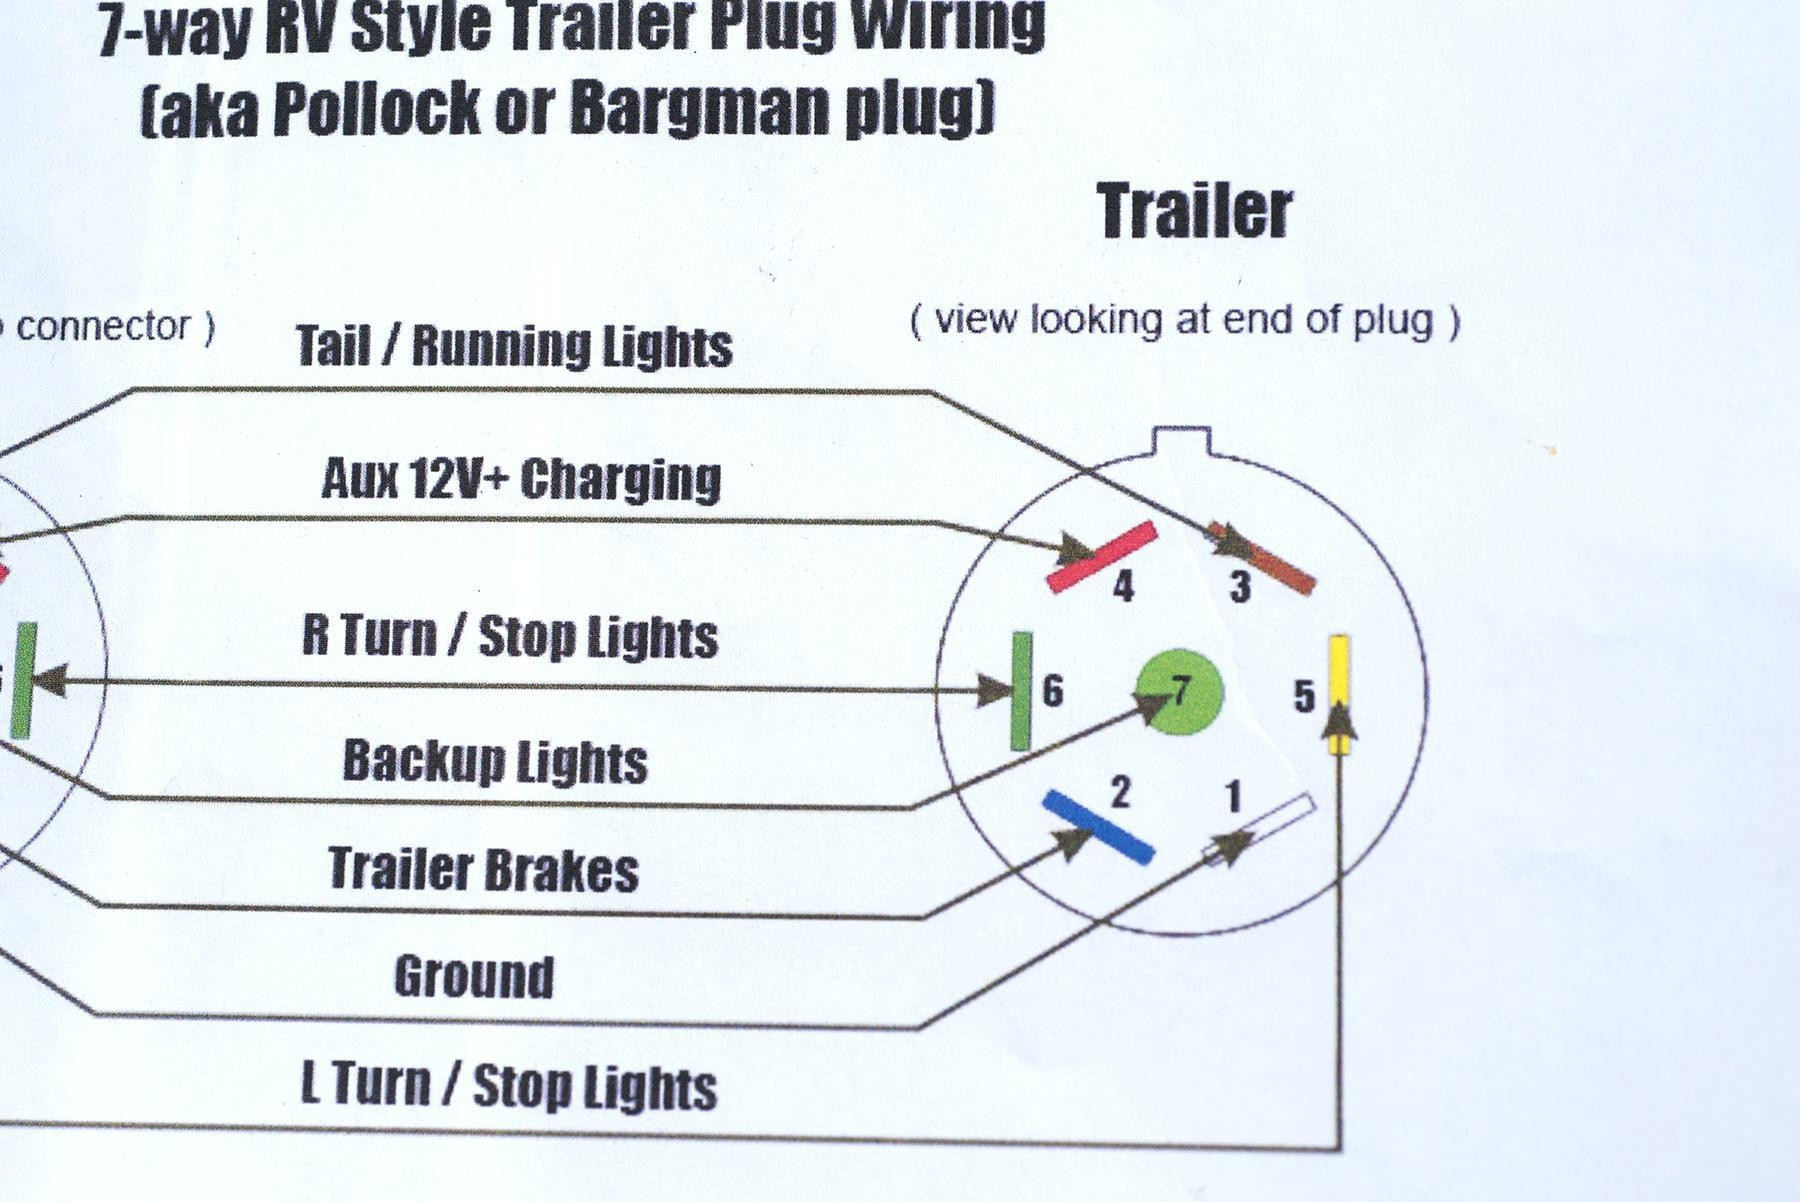 Sae 7 Pin Trailer Plug Wiring Diagram - Detailed Wiring Diagram - 7 Pin Trailer Connection Wiring Diagram